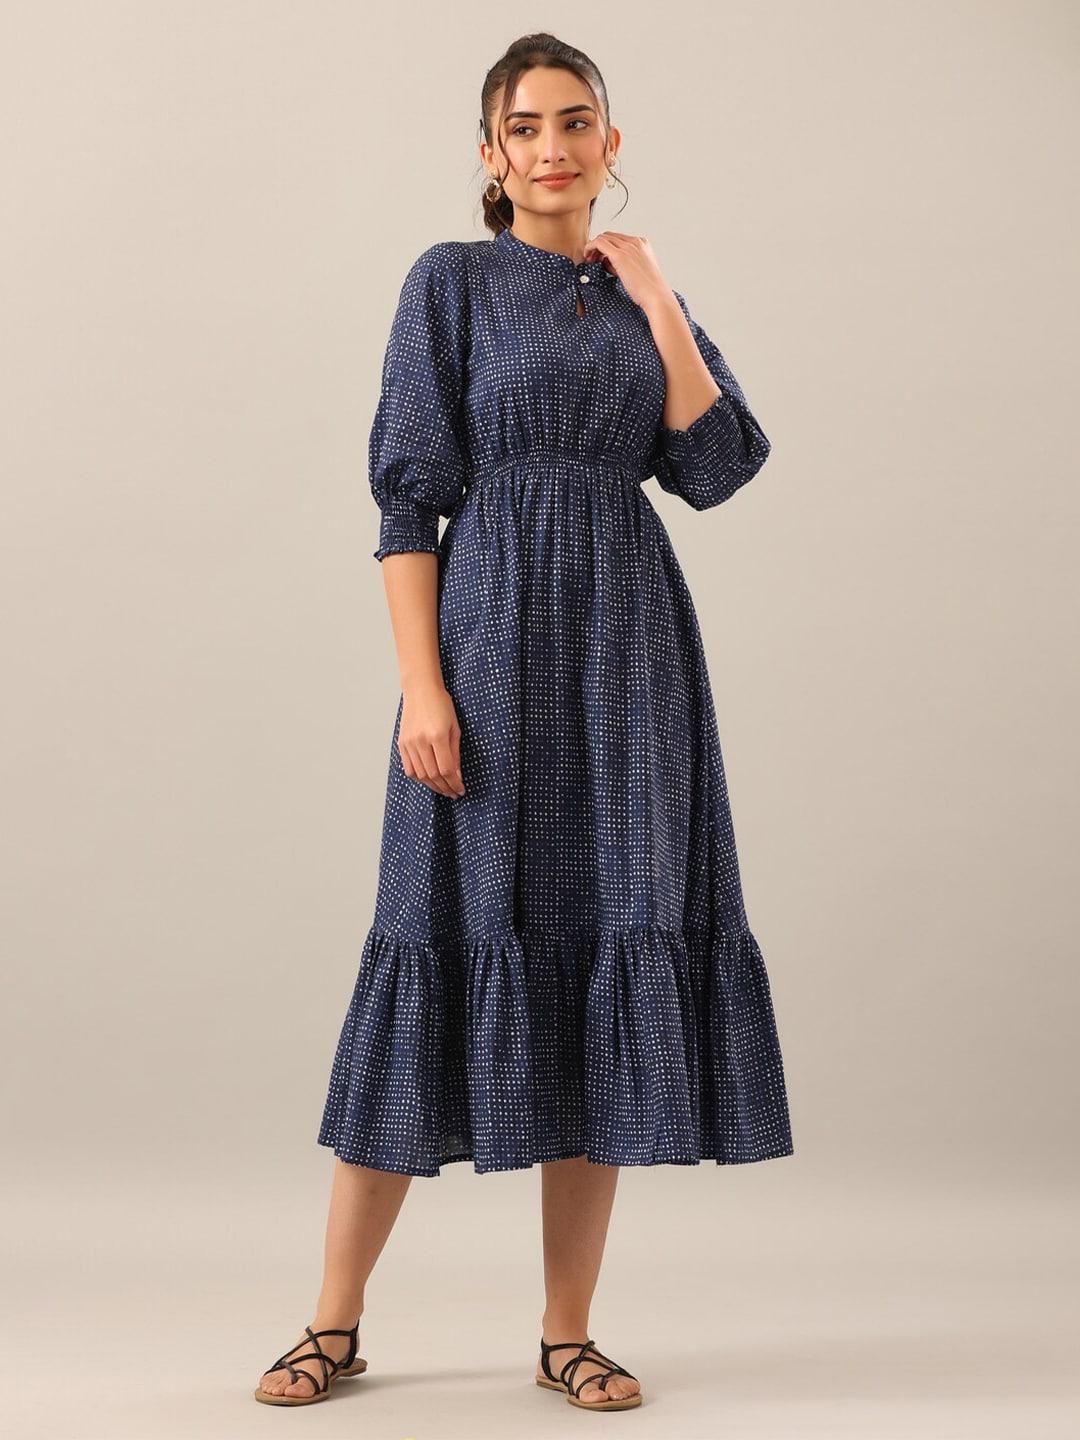 jisora polka dots printed cotton fit and flare midi dress